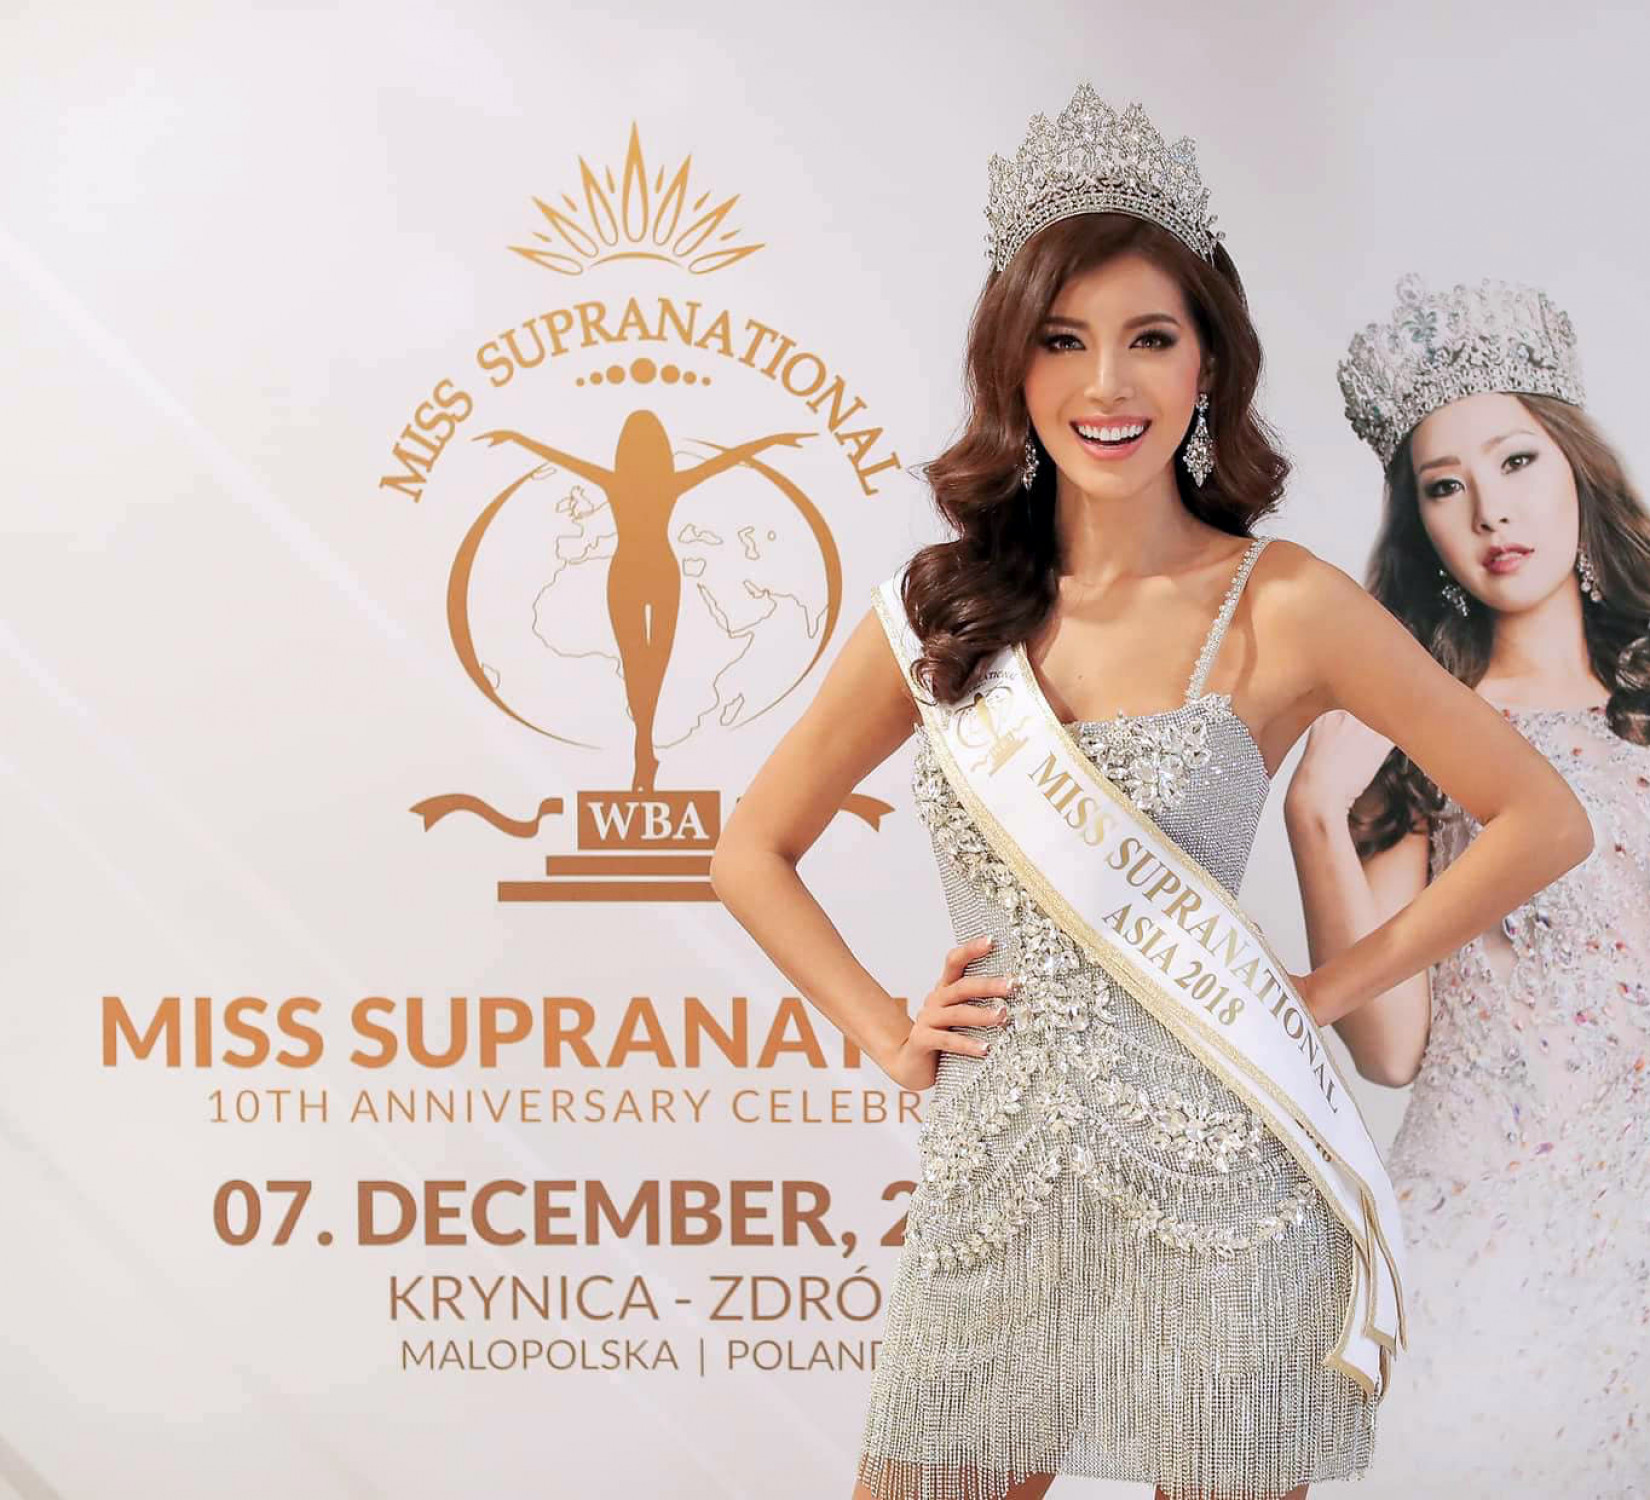 Tối 7/12, siêu mẫu Minh Tú lọt vào Top 10 Hoa hậu Siêu quốc gia - Miss Supranational 2018 ở Ba Lan và đoạt giải Hoa hậu Siêu quốc gia châu Á 2018. 